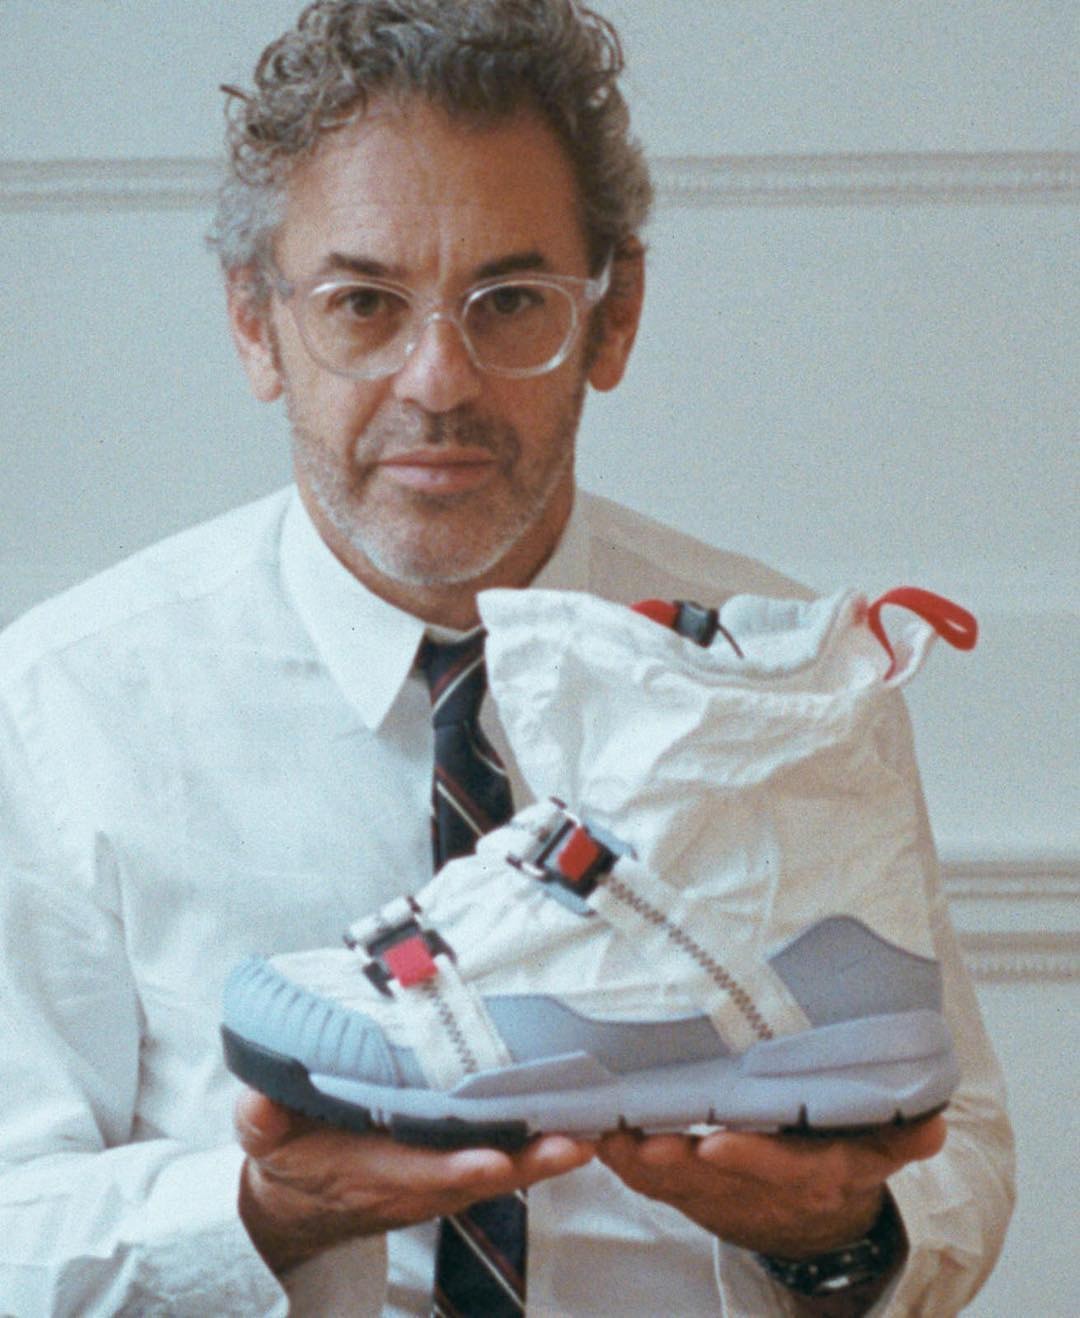 Tom Sachs Nike Mars Yard Overshoe Sneaker Footwear HYPEBEAST 